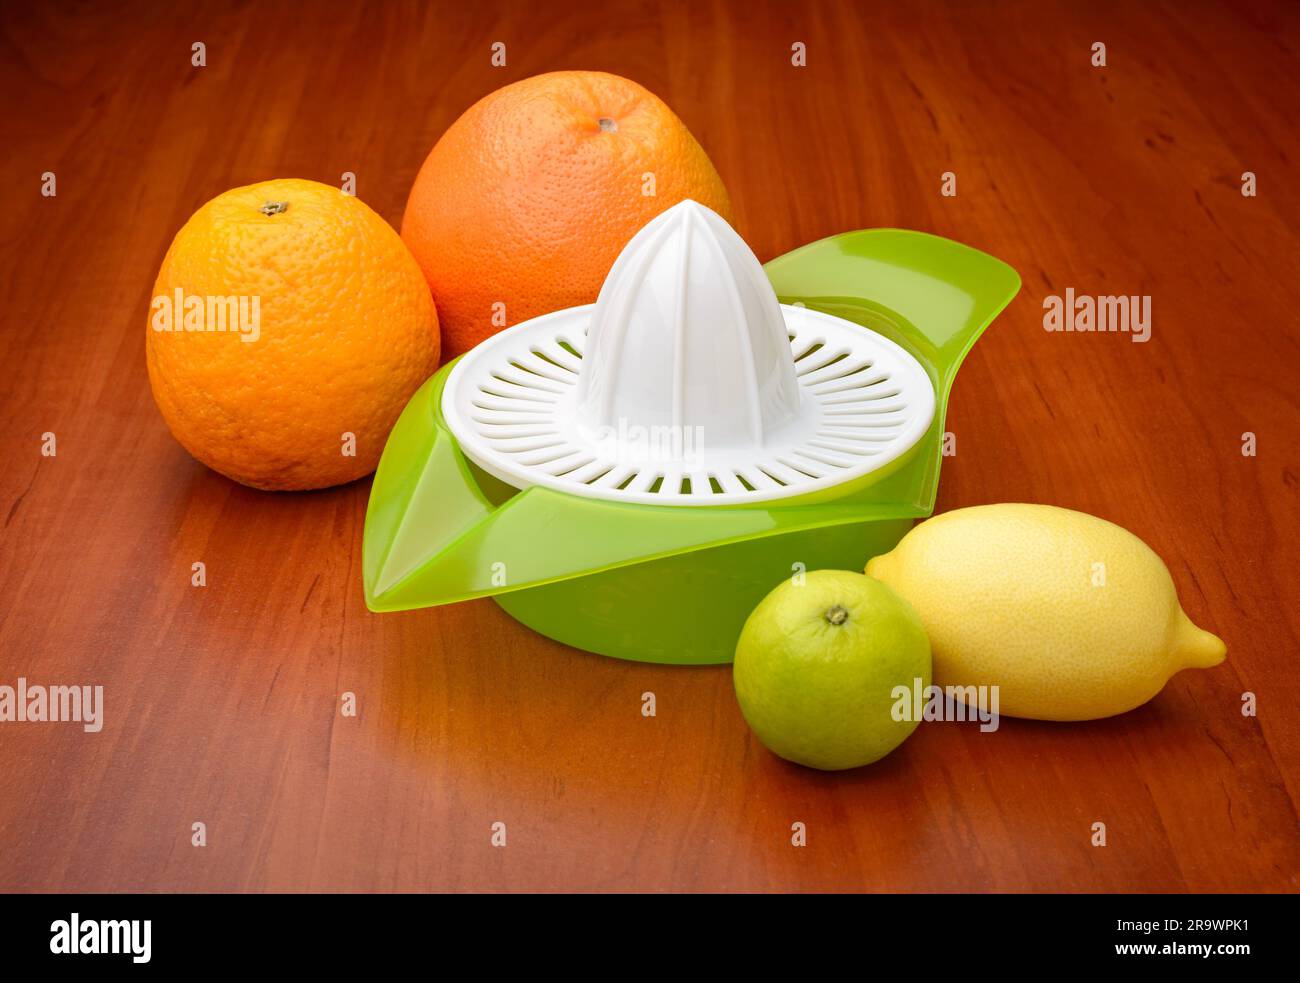 Un spremitore di agrumi con calce, limone, arancia e pompelmo Foto Stock